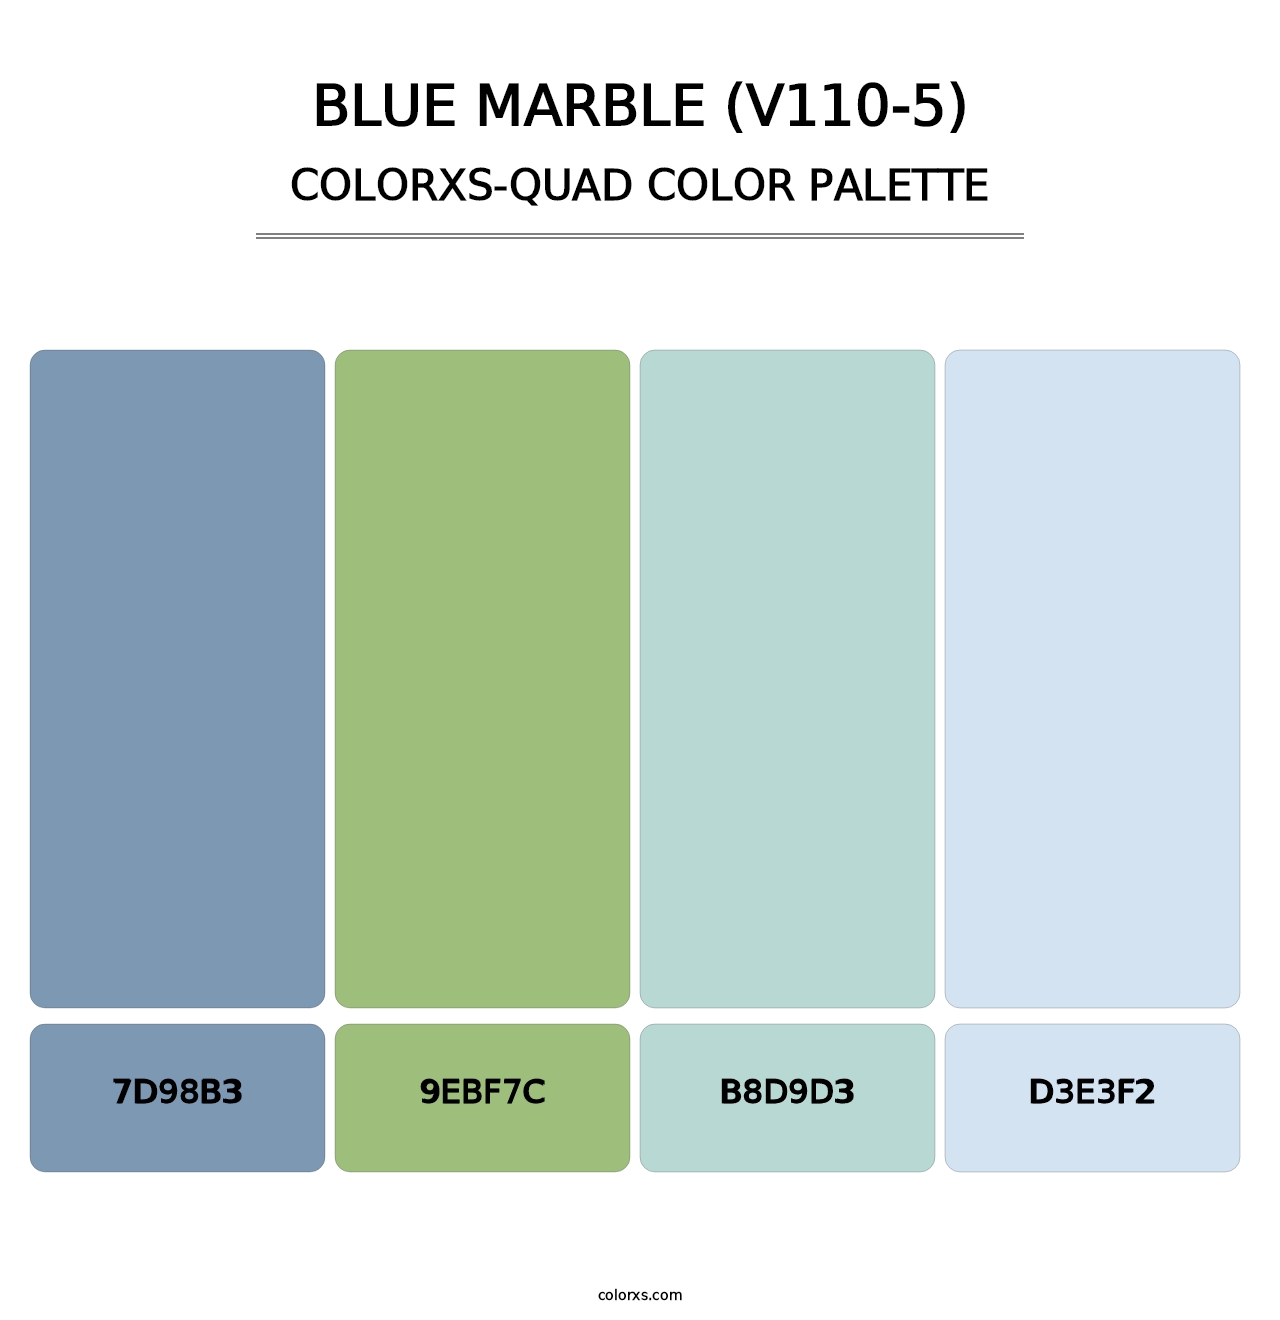 Blue Marble (V110-5) - Colorxs Quad Palette